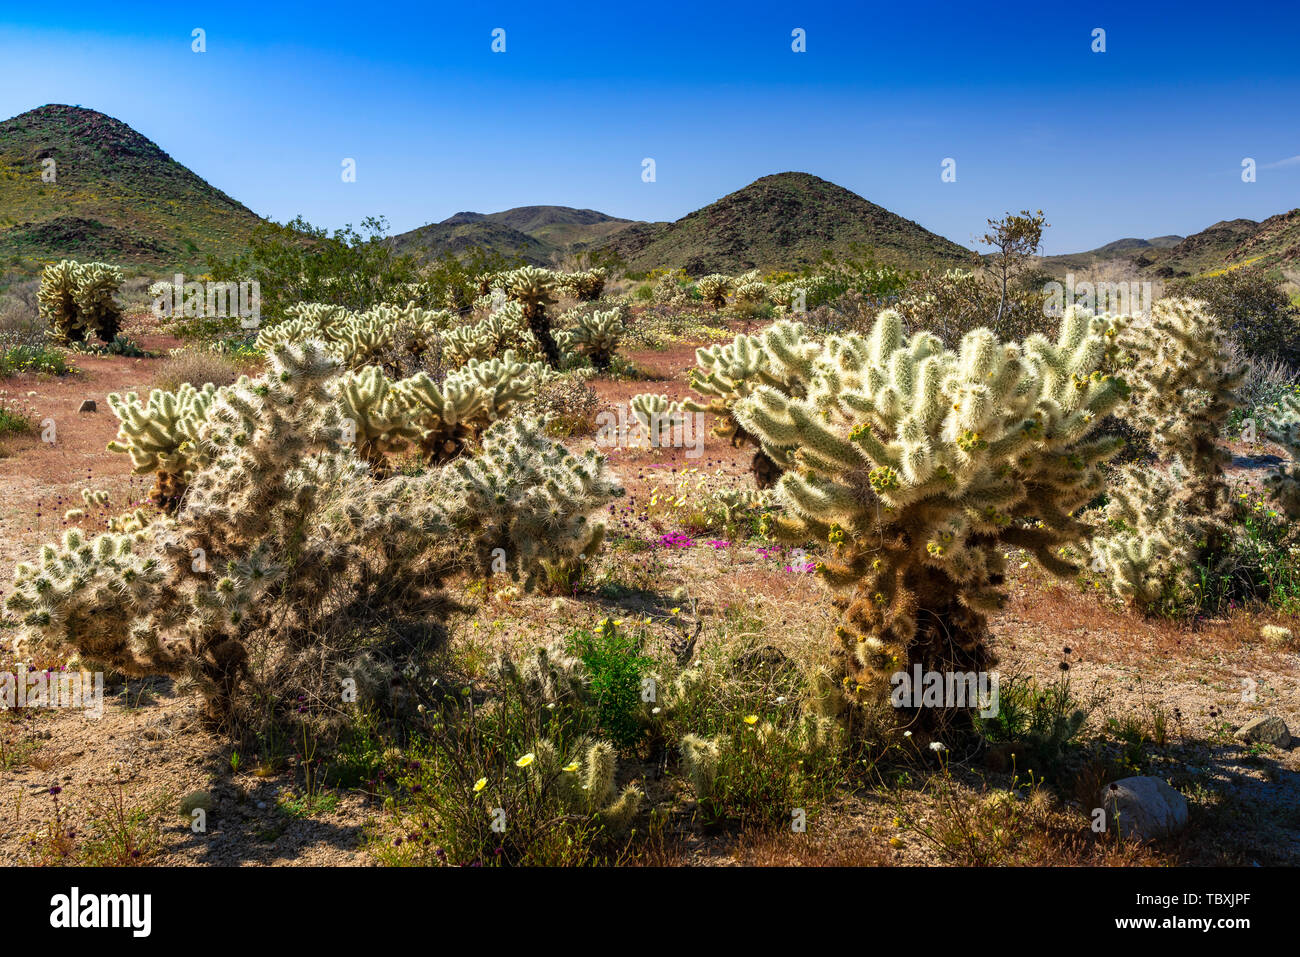 Cholla cactus garden in Joshua Tree National Park, California, USA. Stock Photo